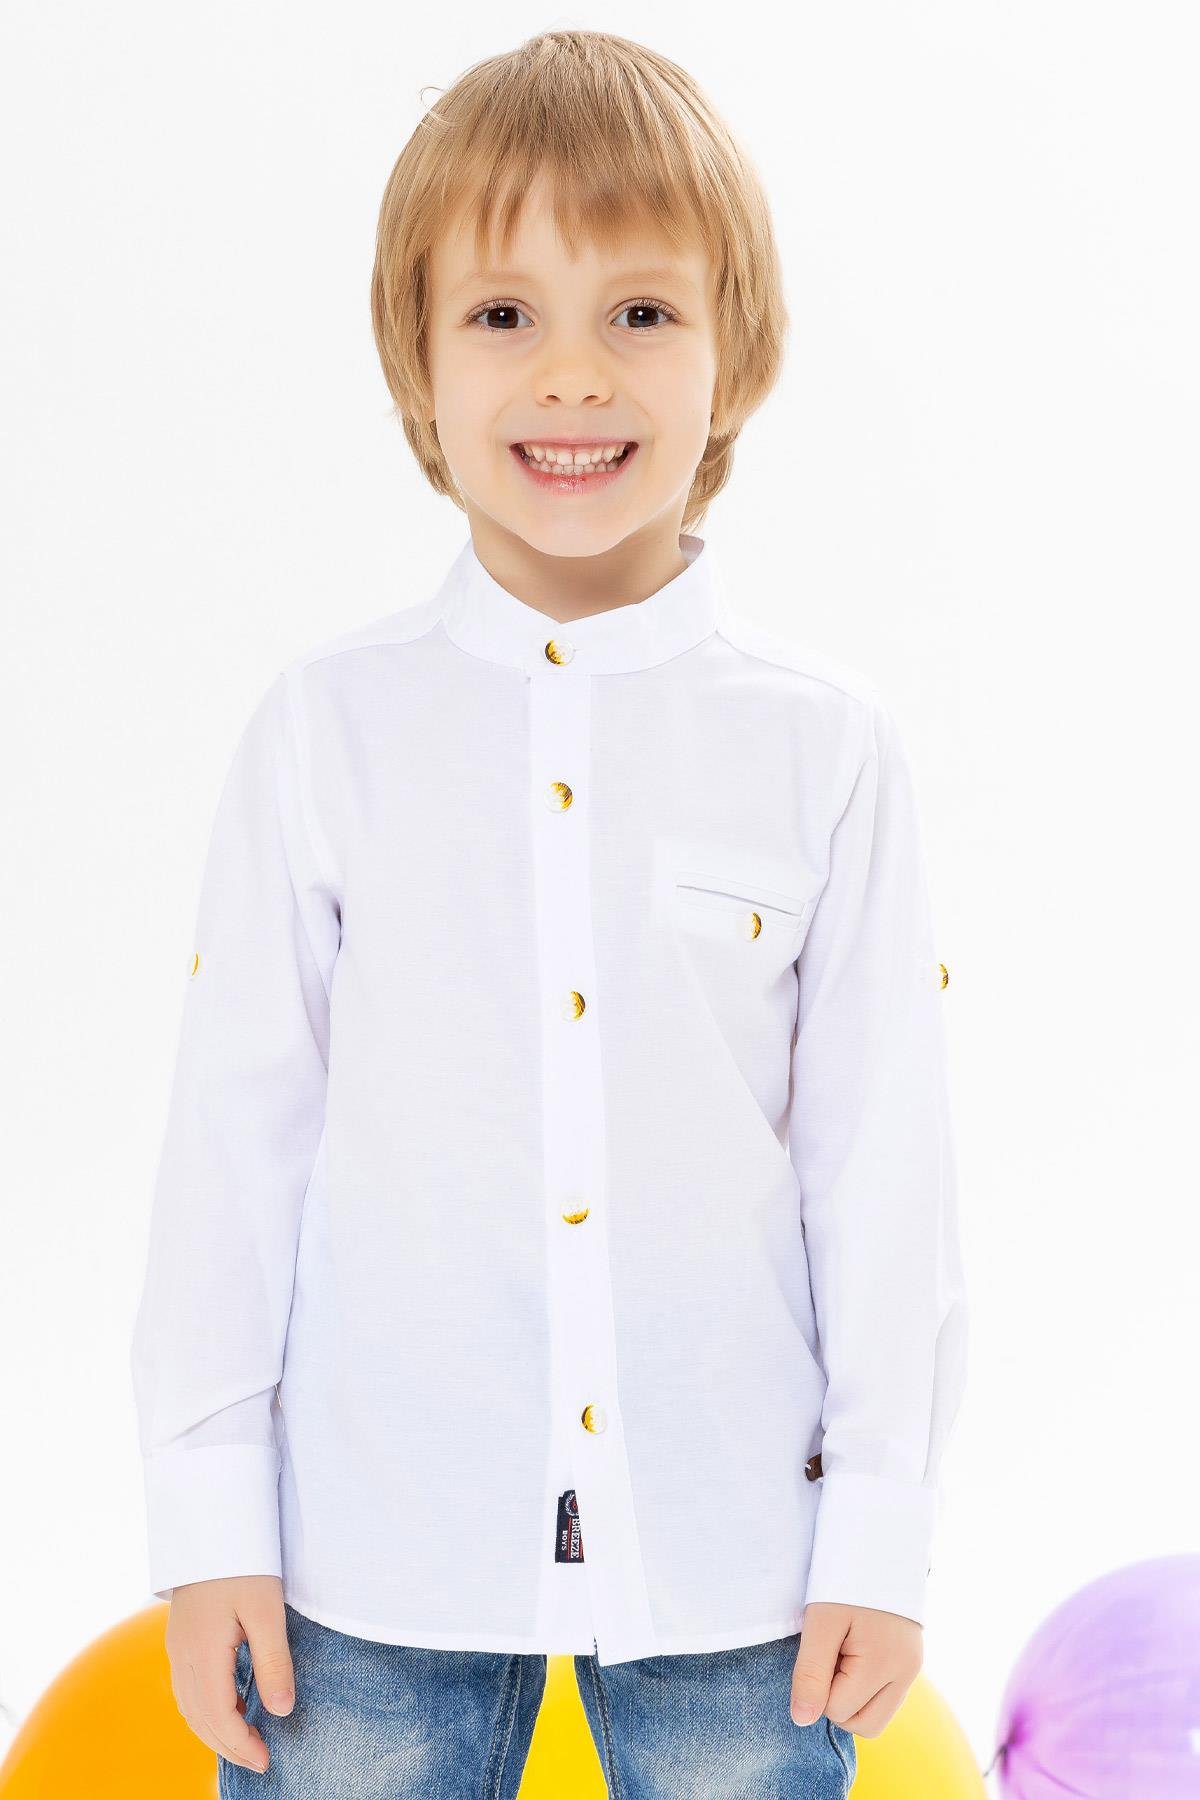 Λευκό πουκάμισο με γιακά μάο για αγόρι (9-12ετών)